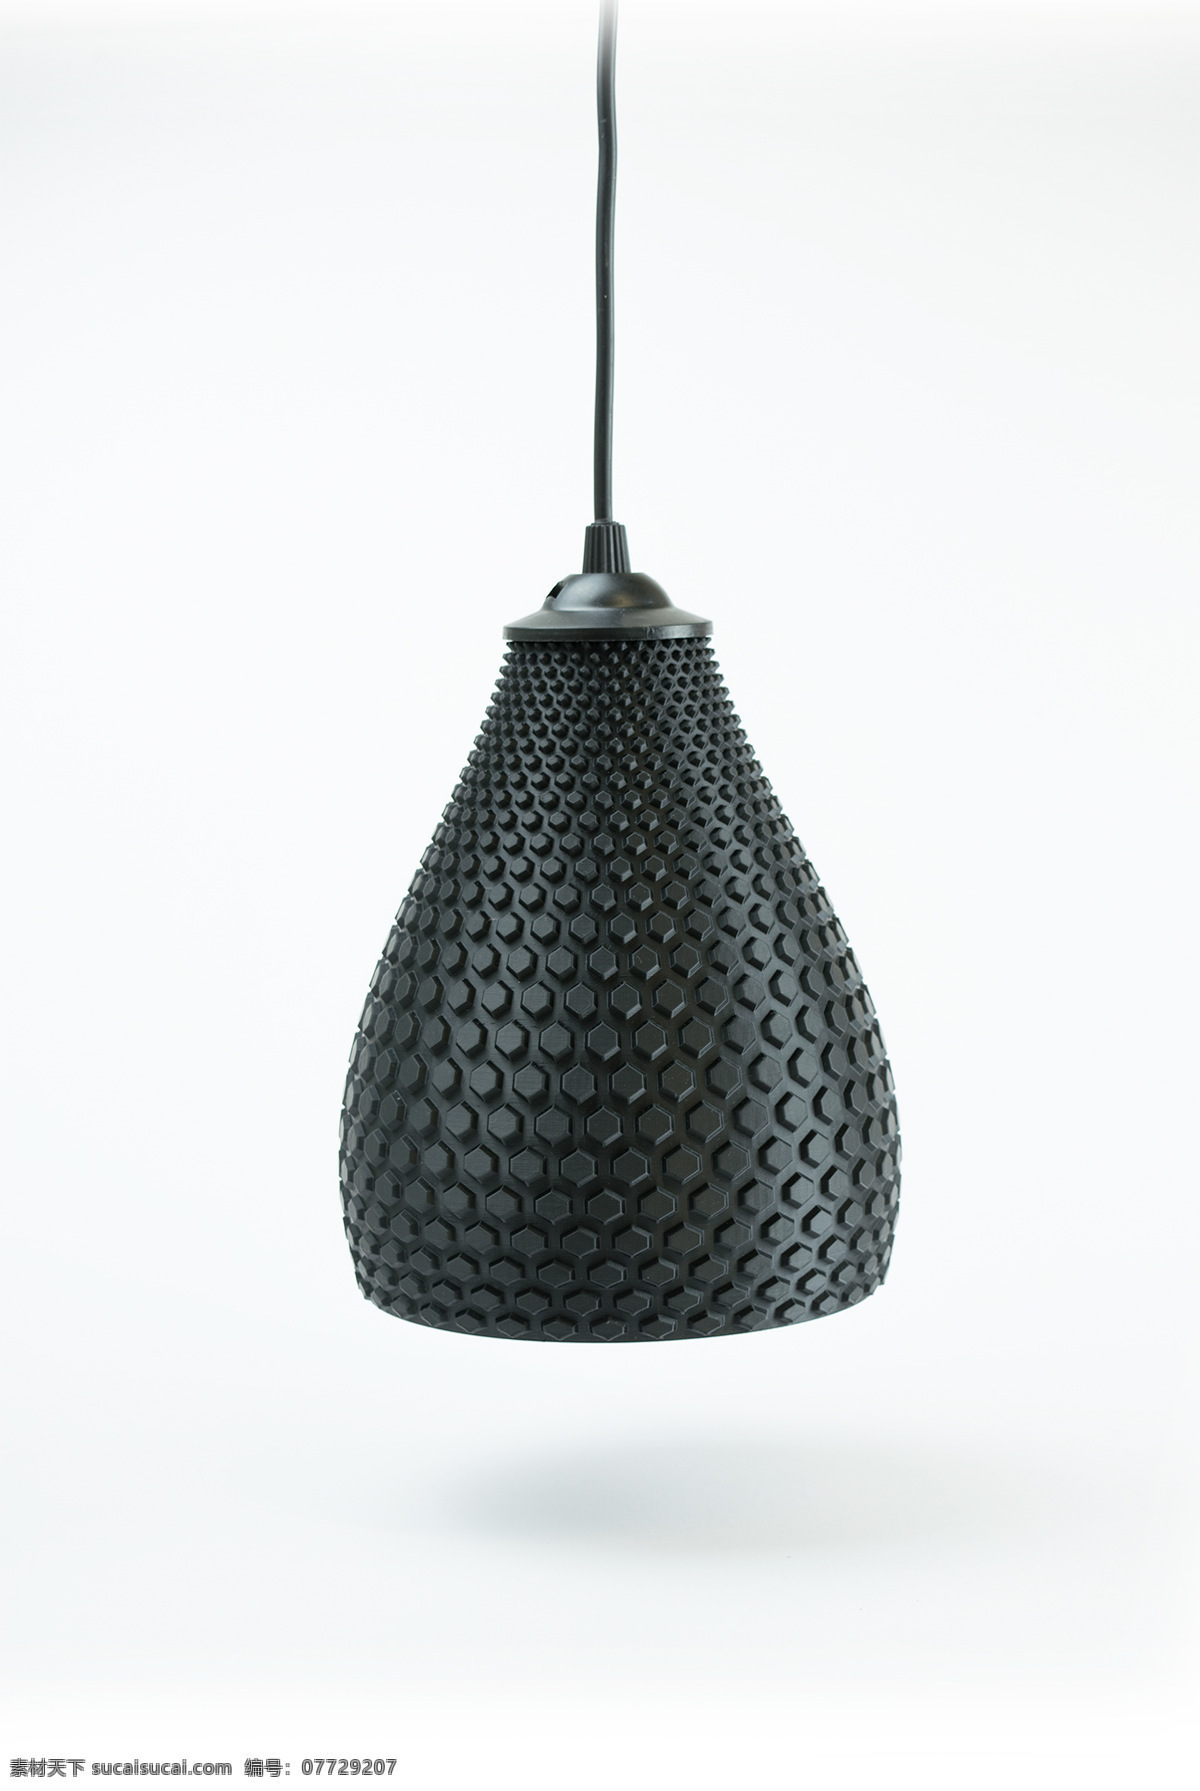 3d打印 3d渲染 创意 灯具 灯罩 概念设计 几何形状 建模 模型 黑色 3d 打印